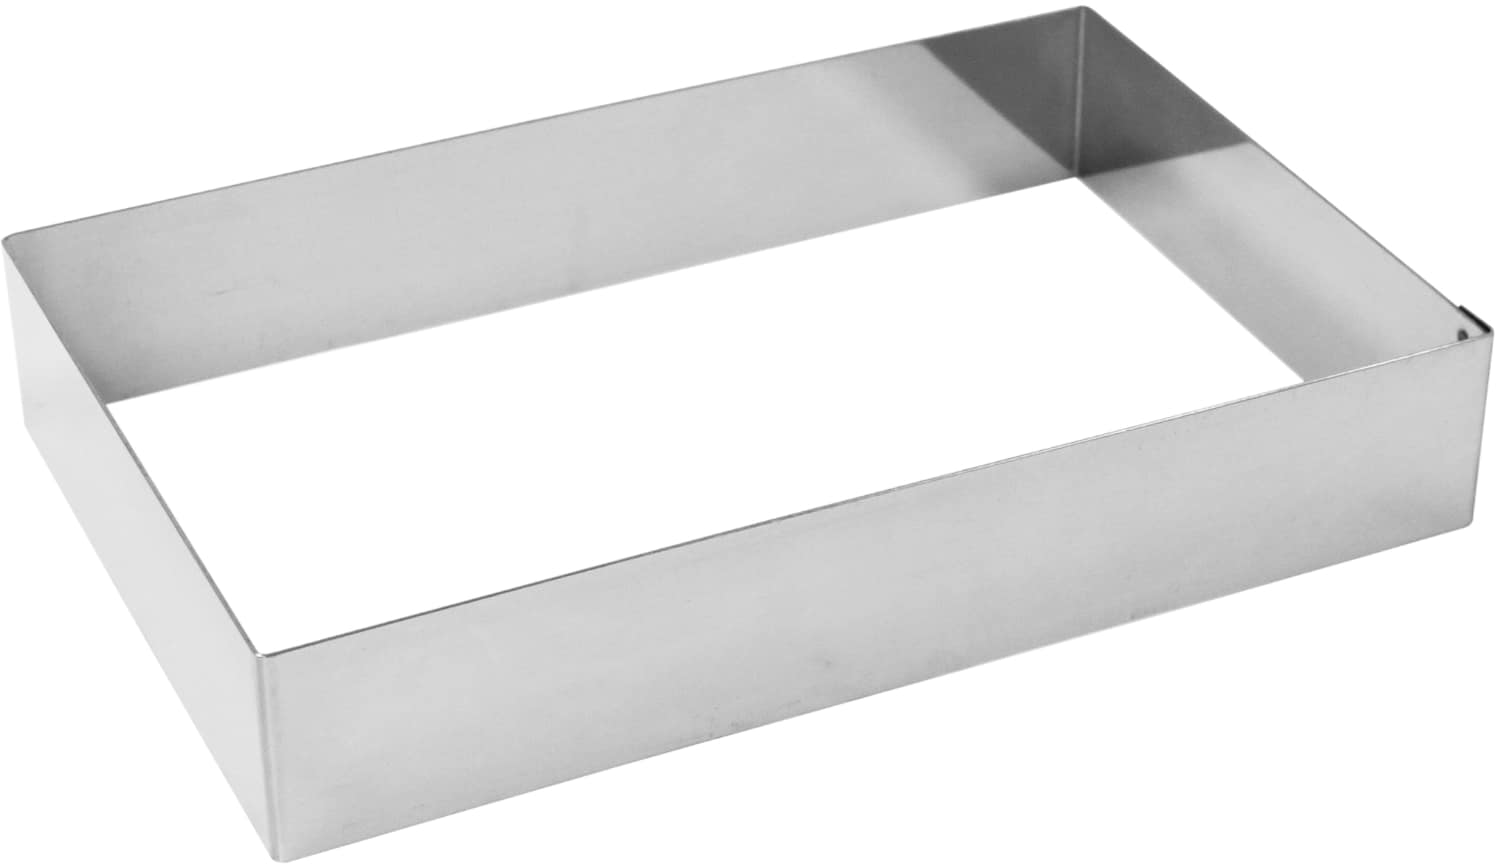 Tart ring "rectanglar" stainless steel